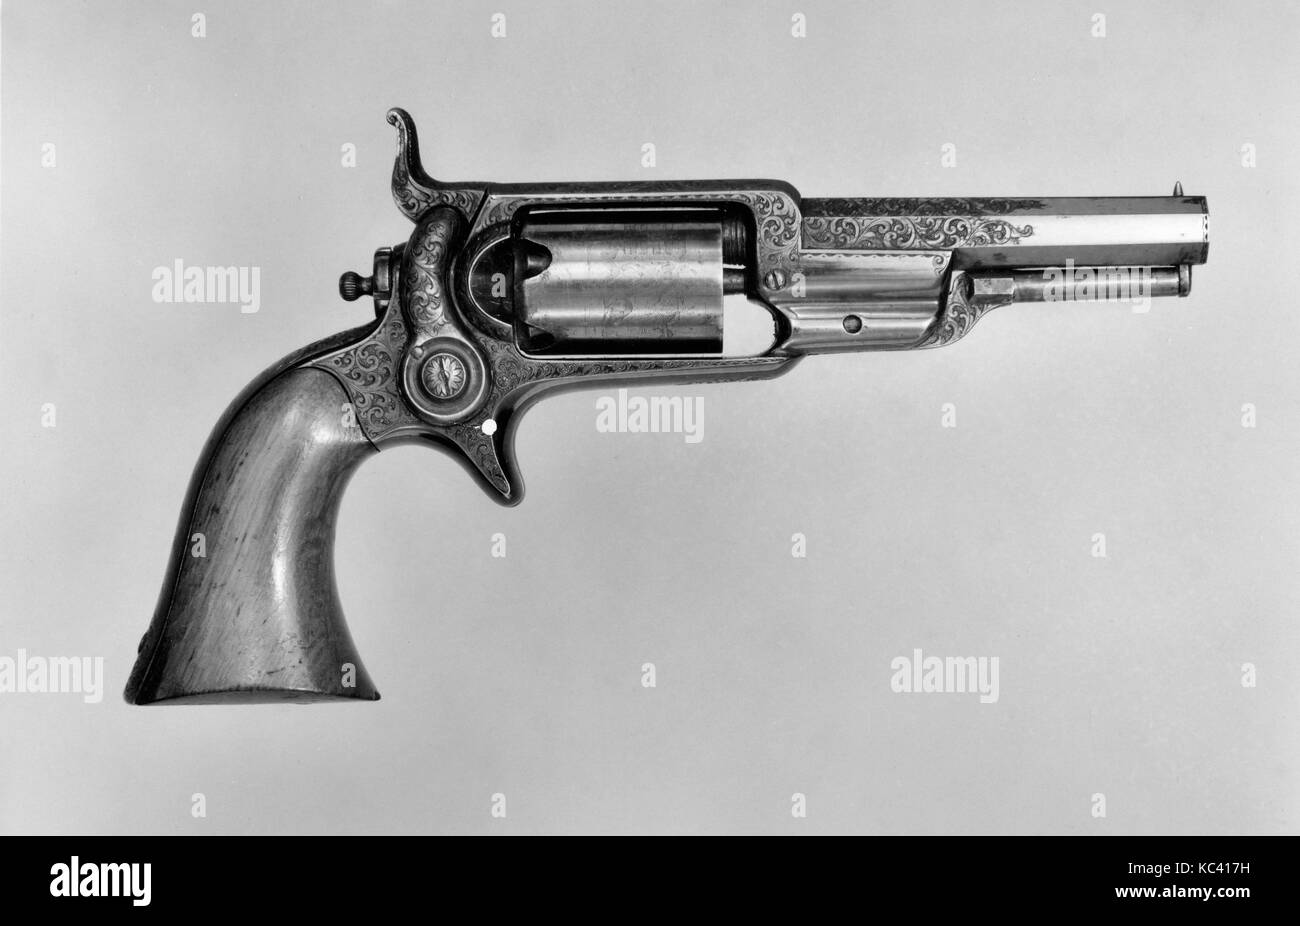 Modello Colt 1855 Pocket Revolver a percussione, n. di serie 4460, con case e accessori, 1855 Foto Stock